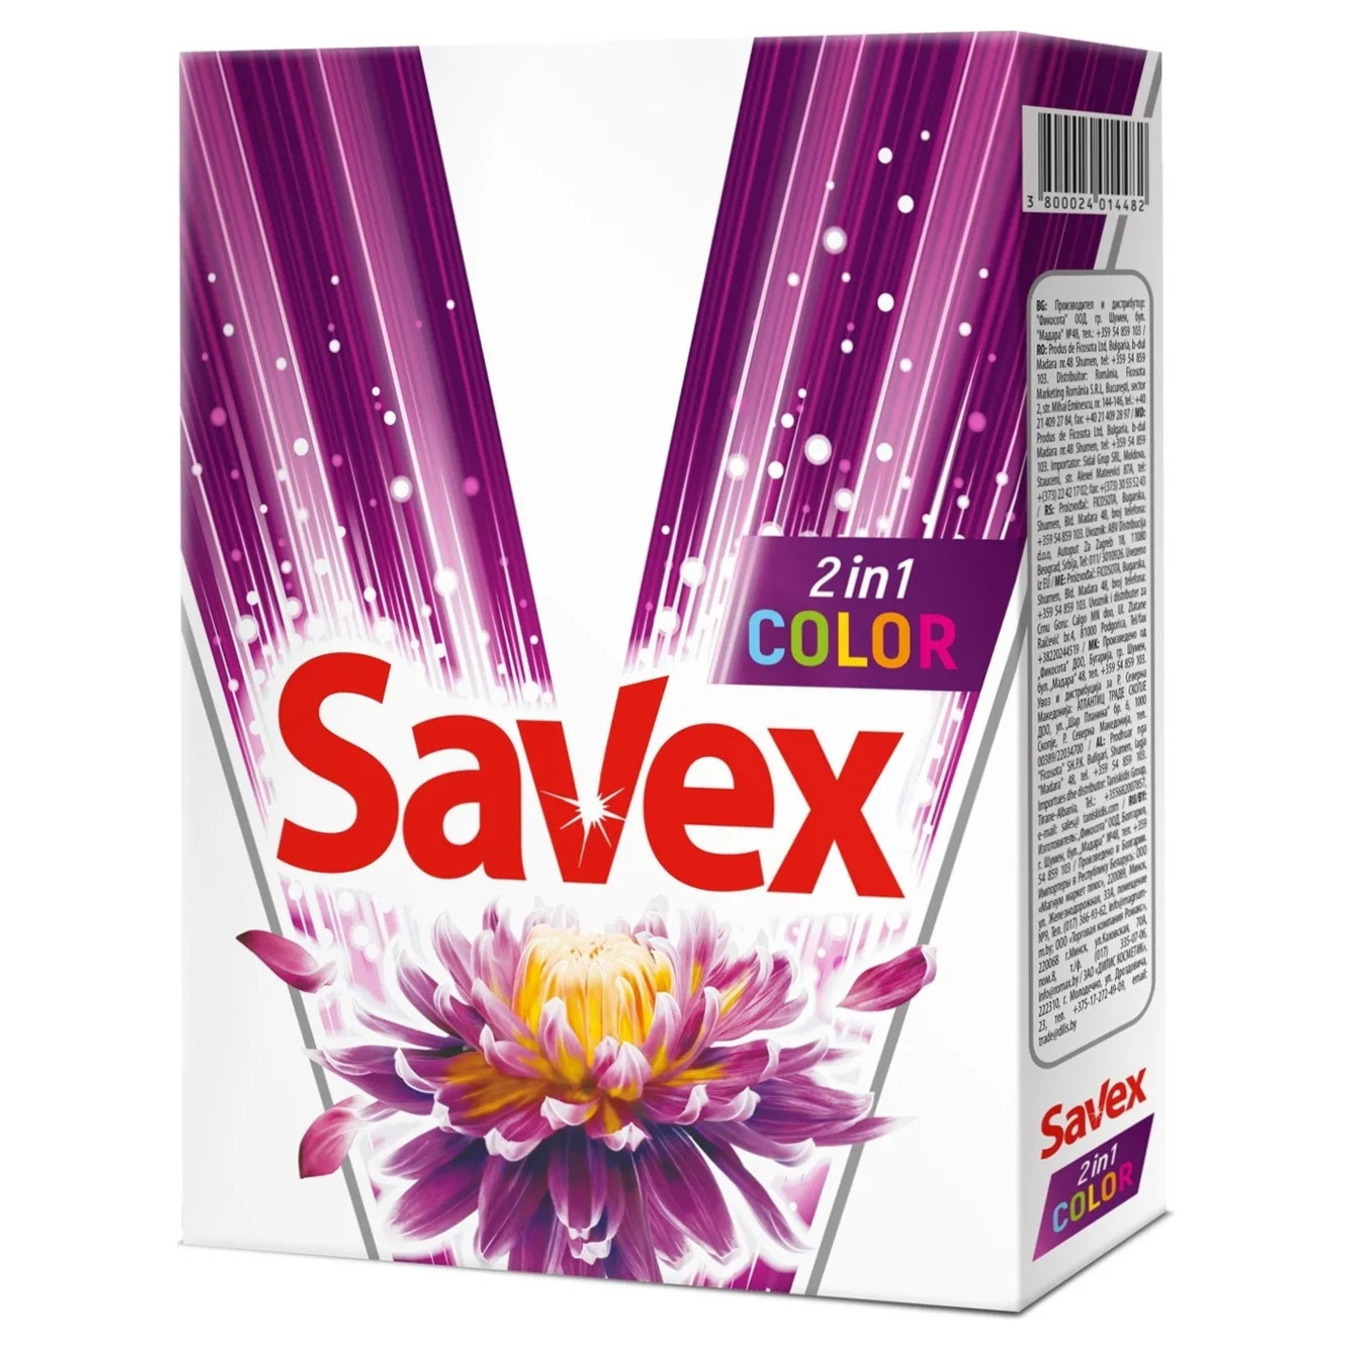 Savex Parfum 2in1 In Love Washing powder machine 400g